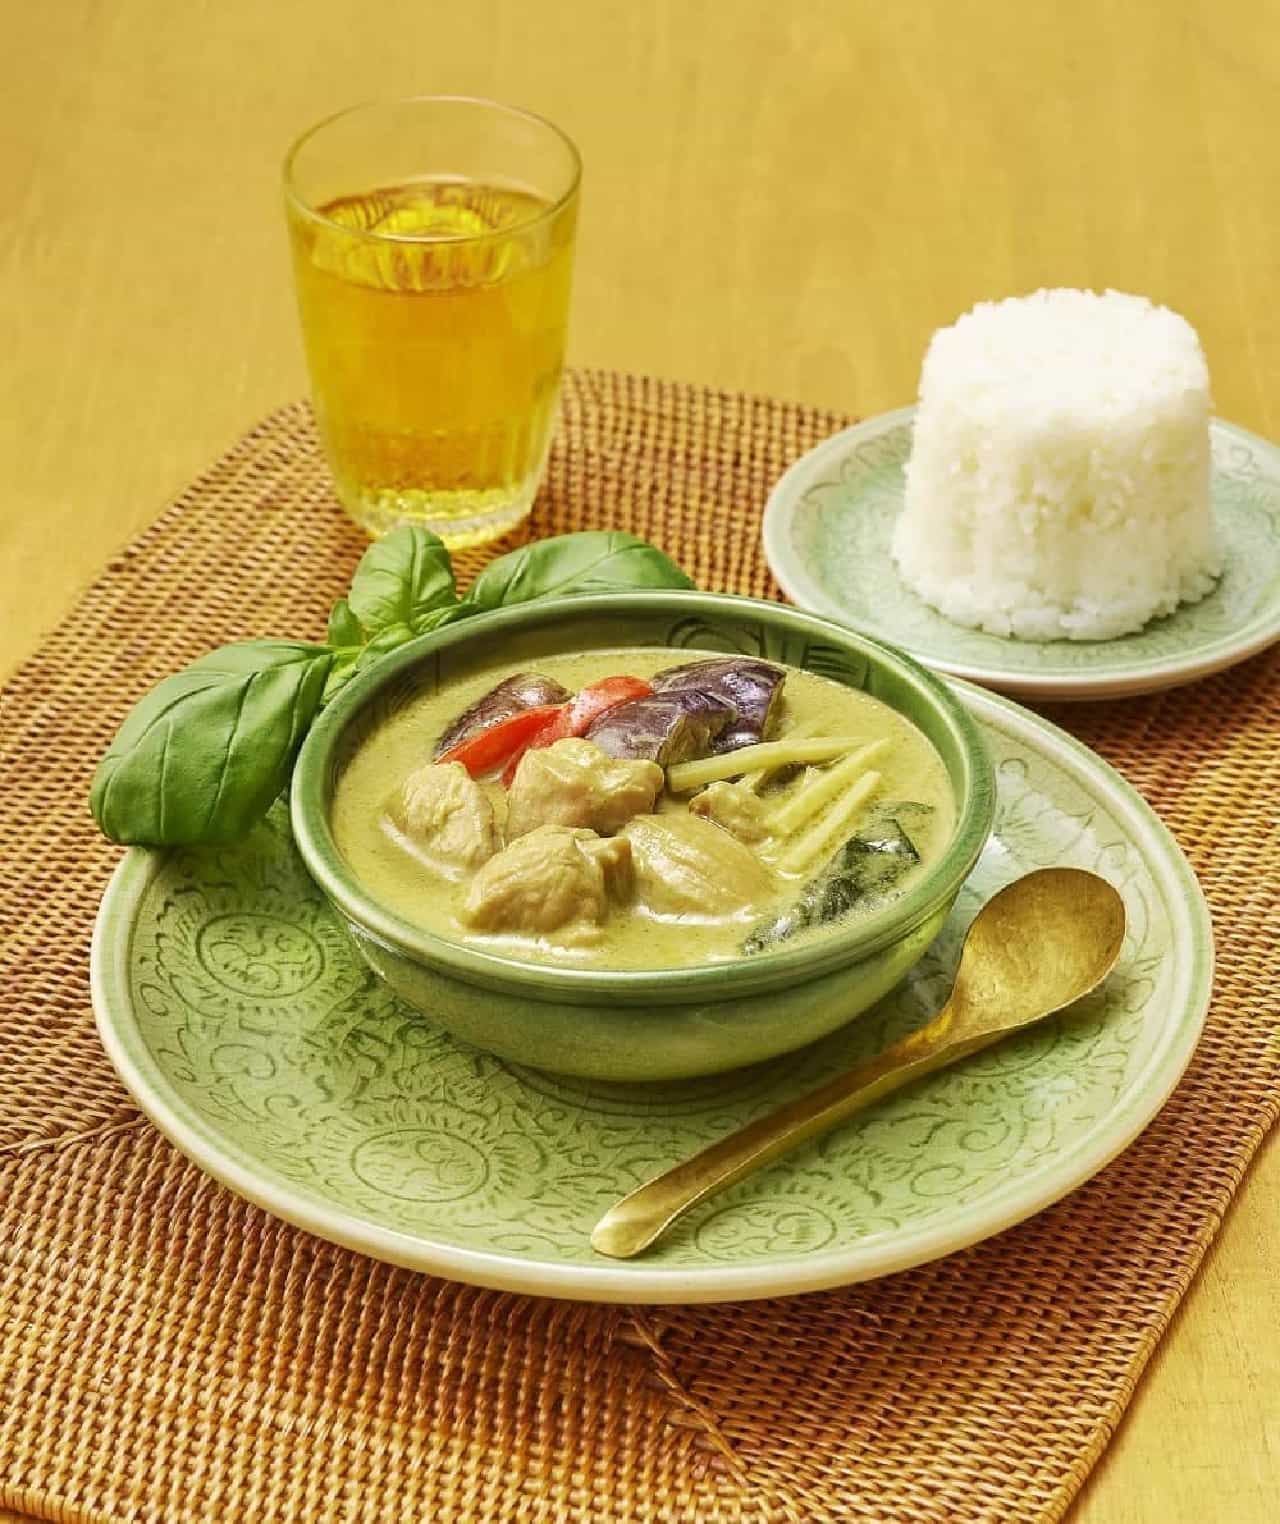 ファミマ新作 タイで作ったグリーンカレー がウマそー 本場ならではのハーブや食材使用で本格的な味わいに えん食べ